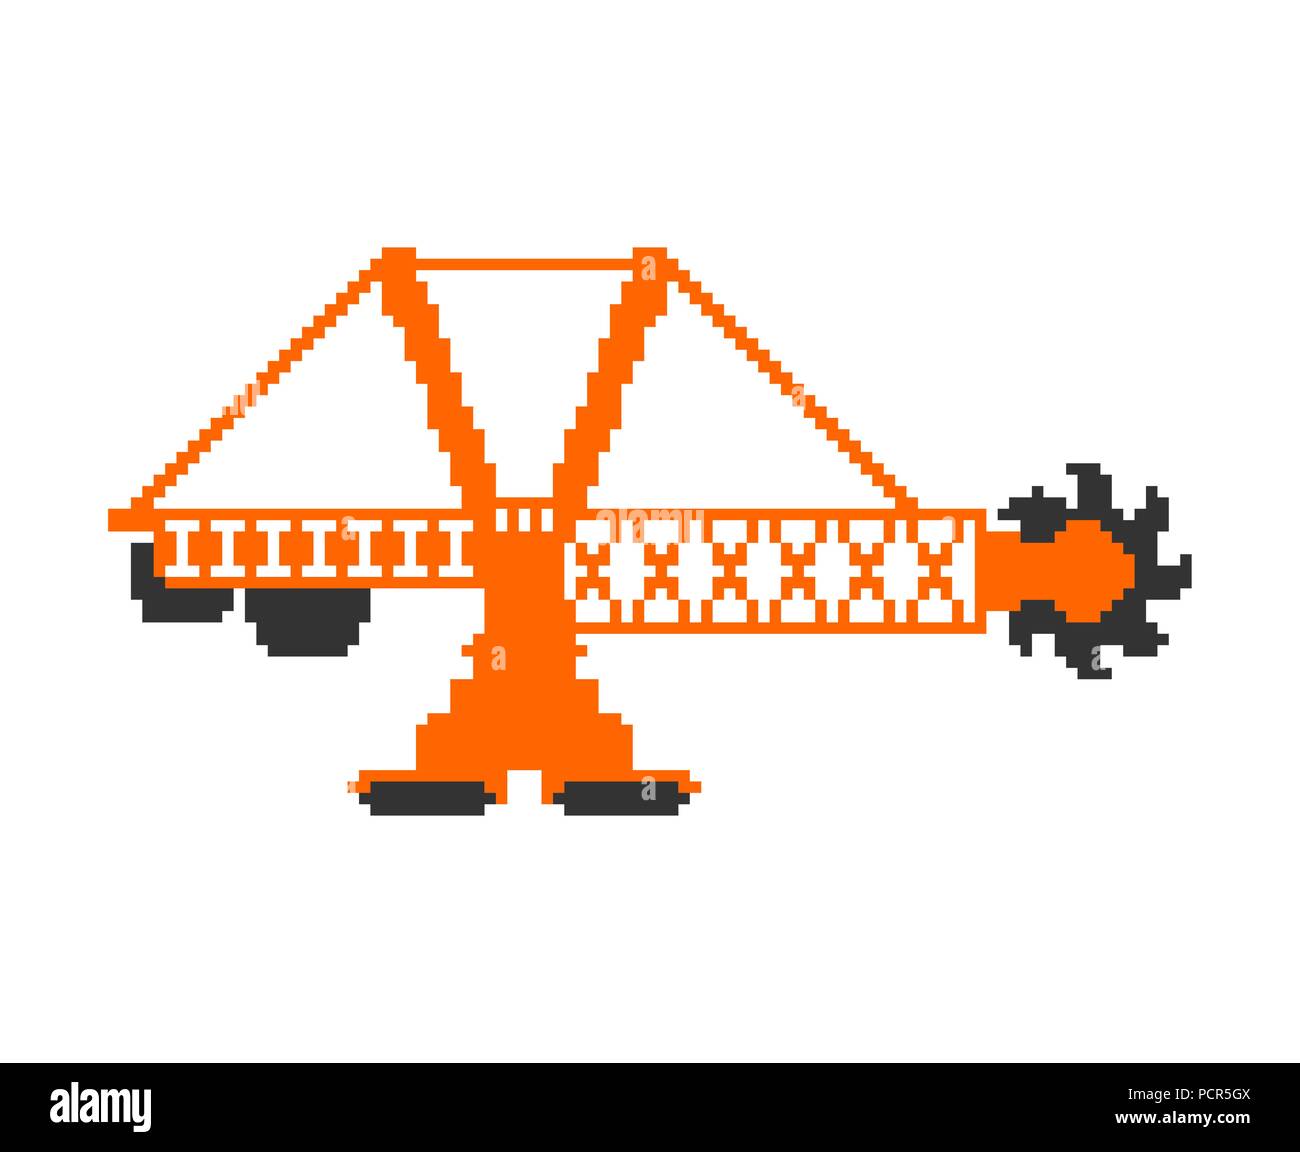 Bucket wheel excavator pixel art. 8 bit Heavy equipment  Vector illustration Stock Vector